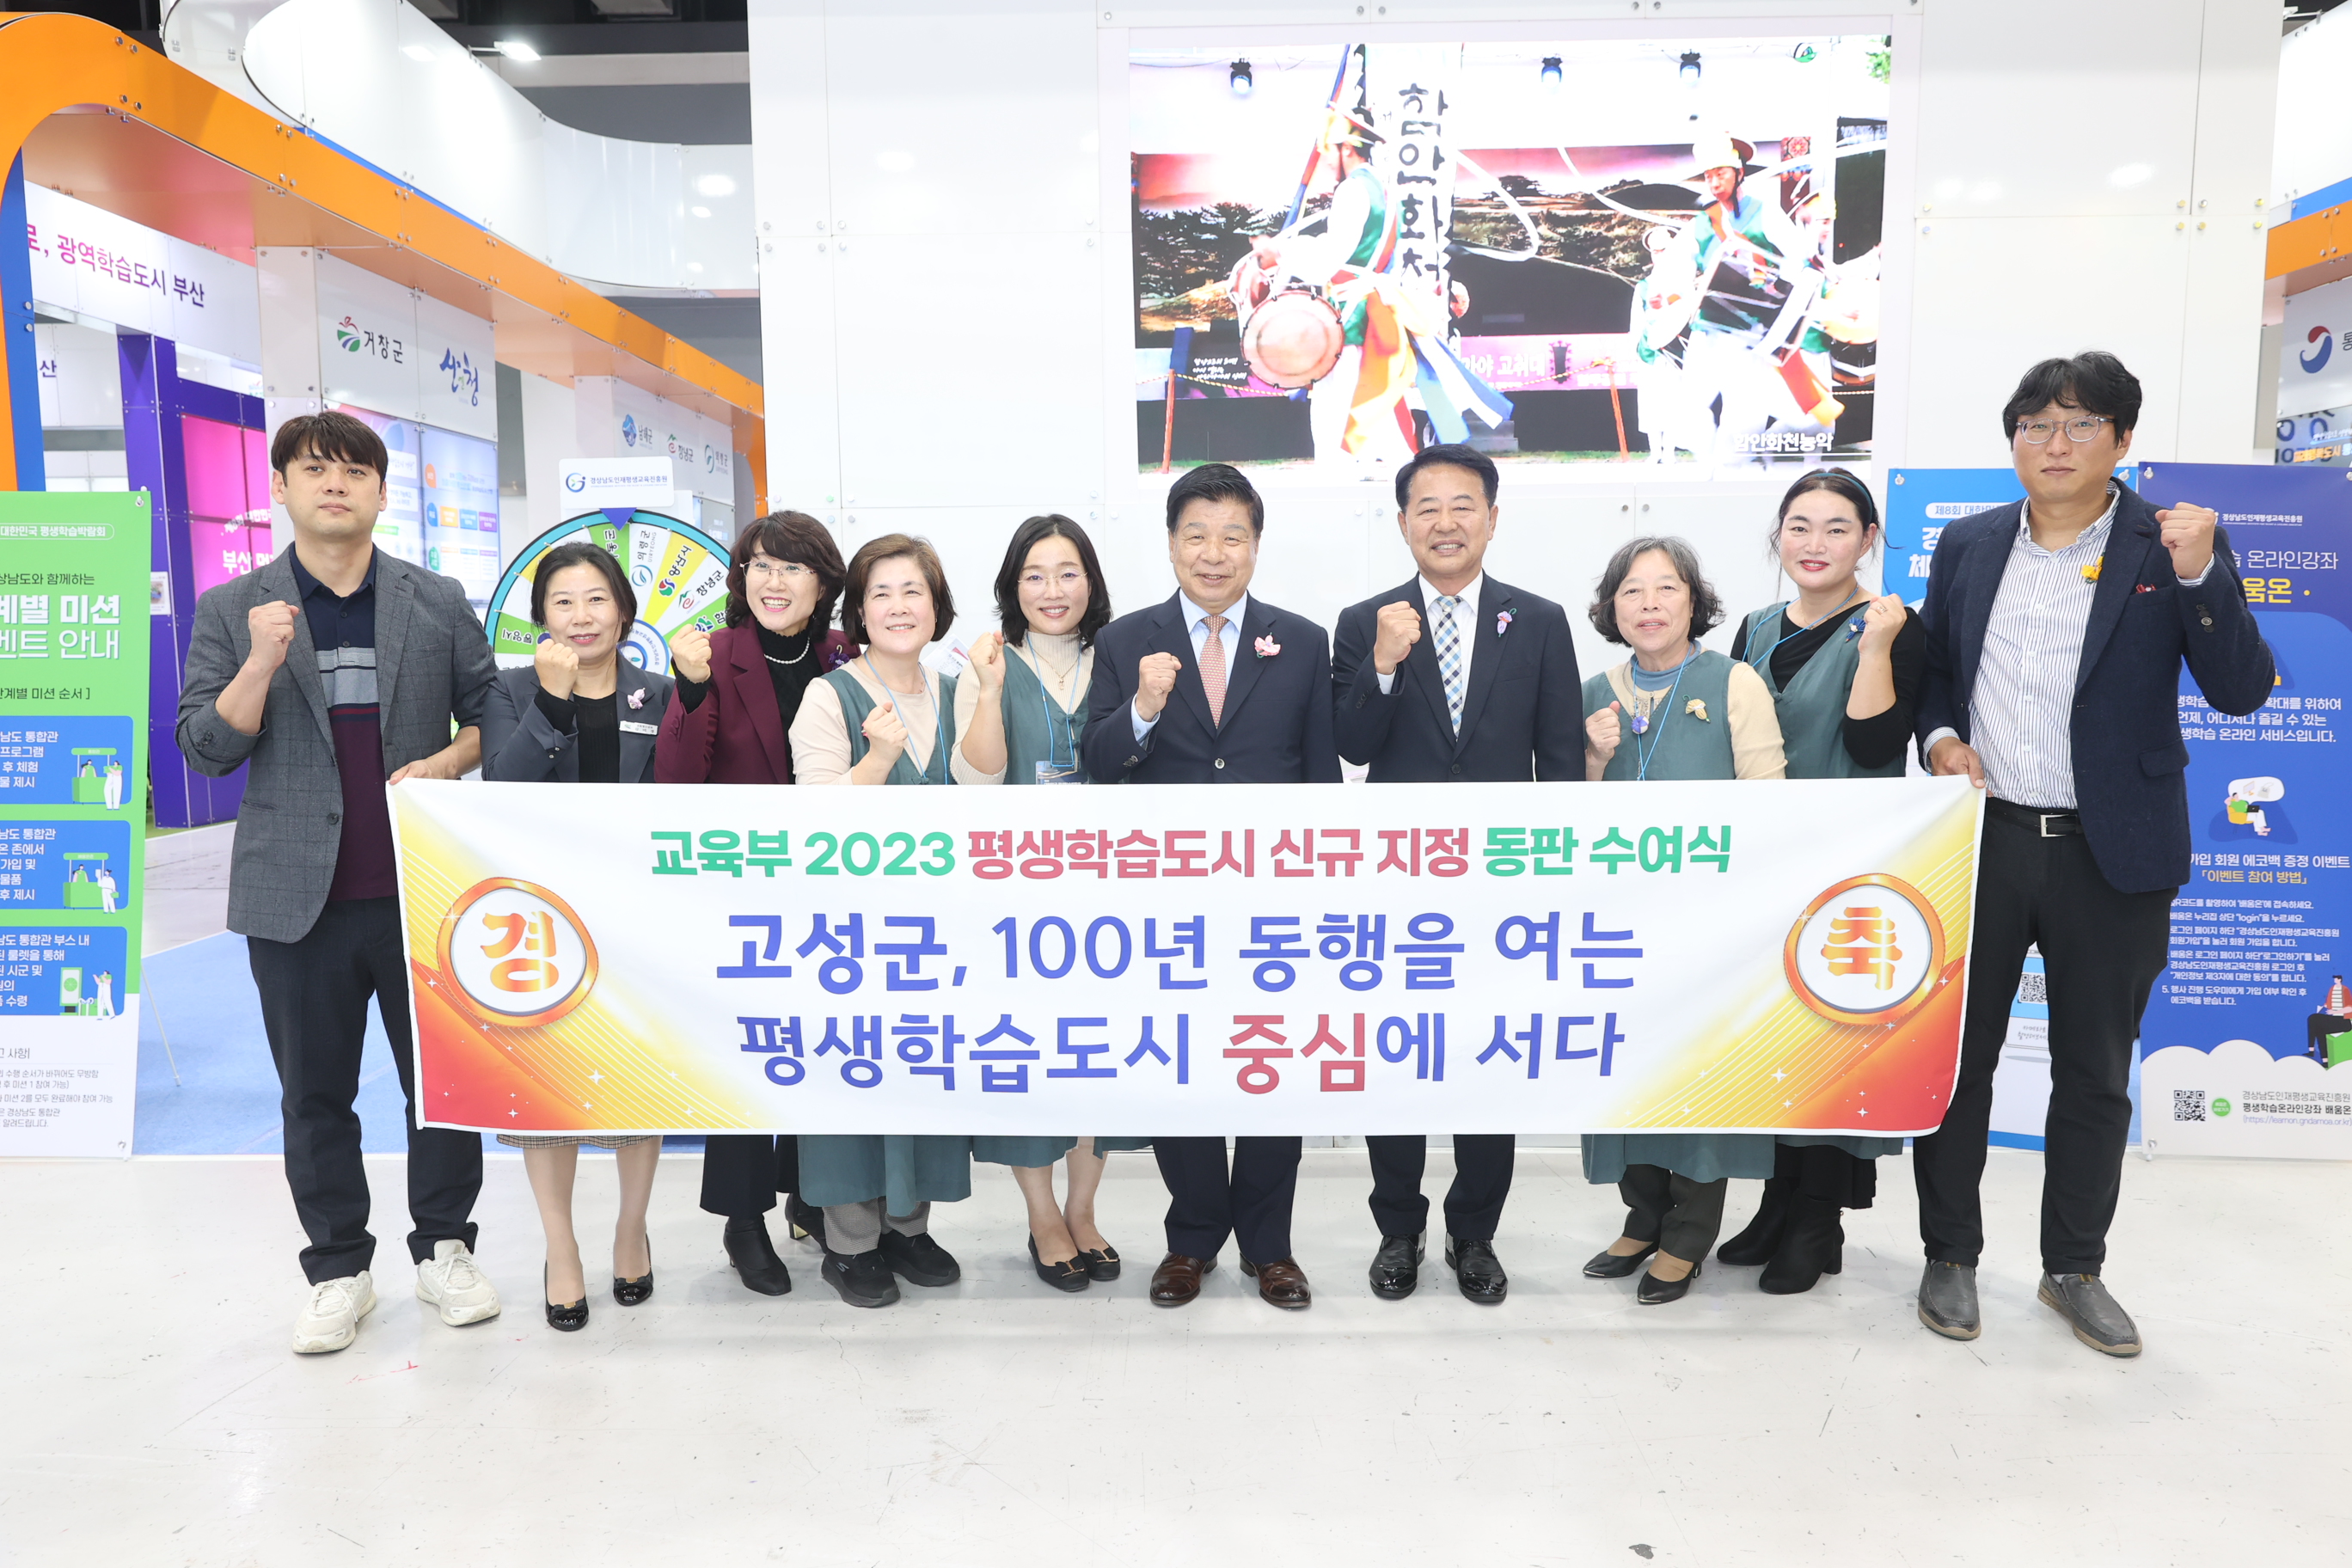 11월2일 대한민국 평생학습 박람회 관련자료